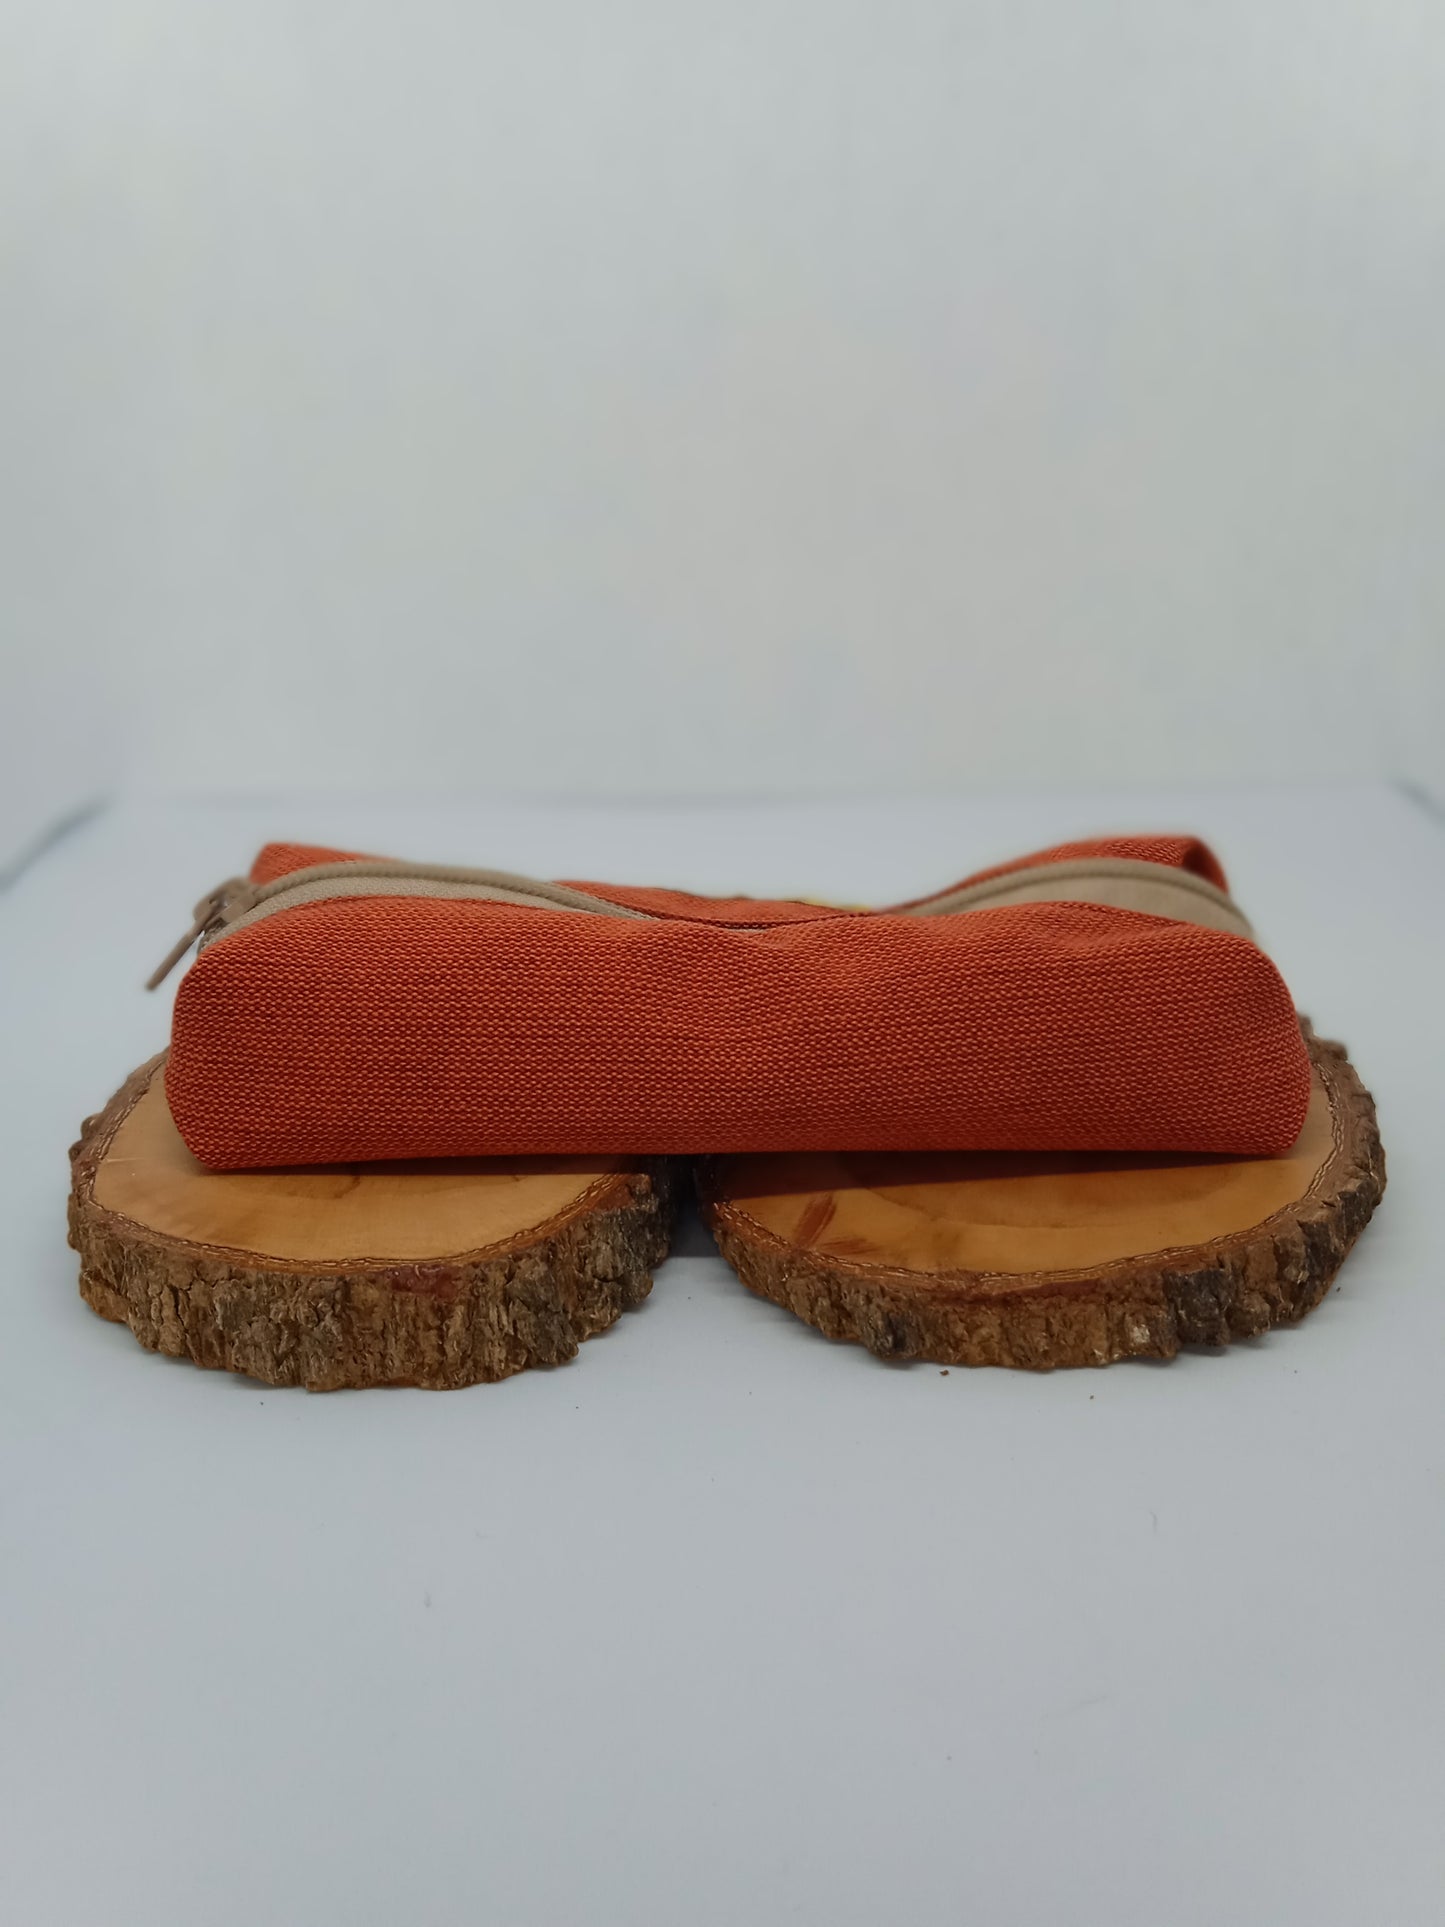 Trousse simple rouge orangé